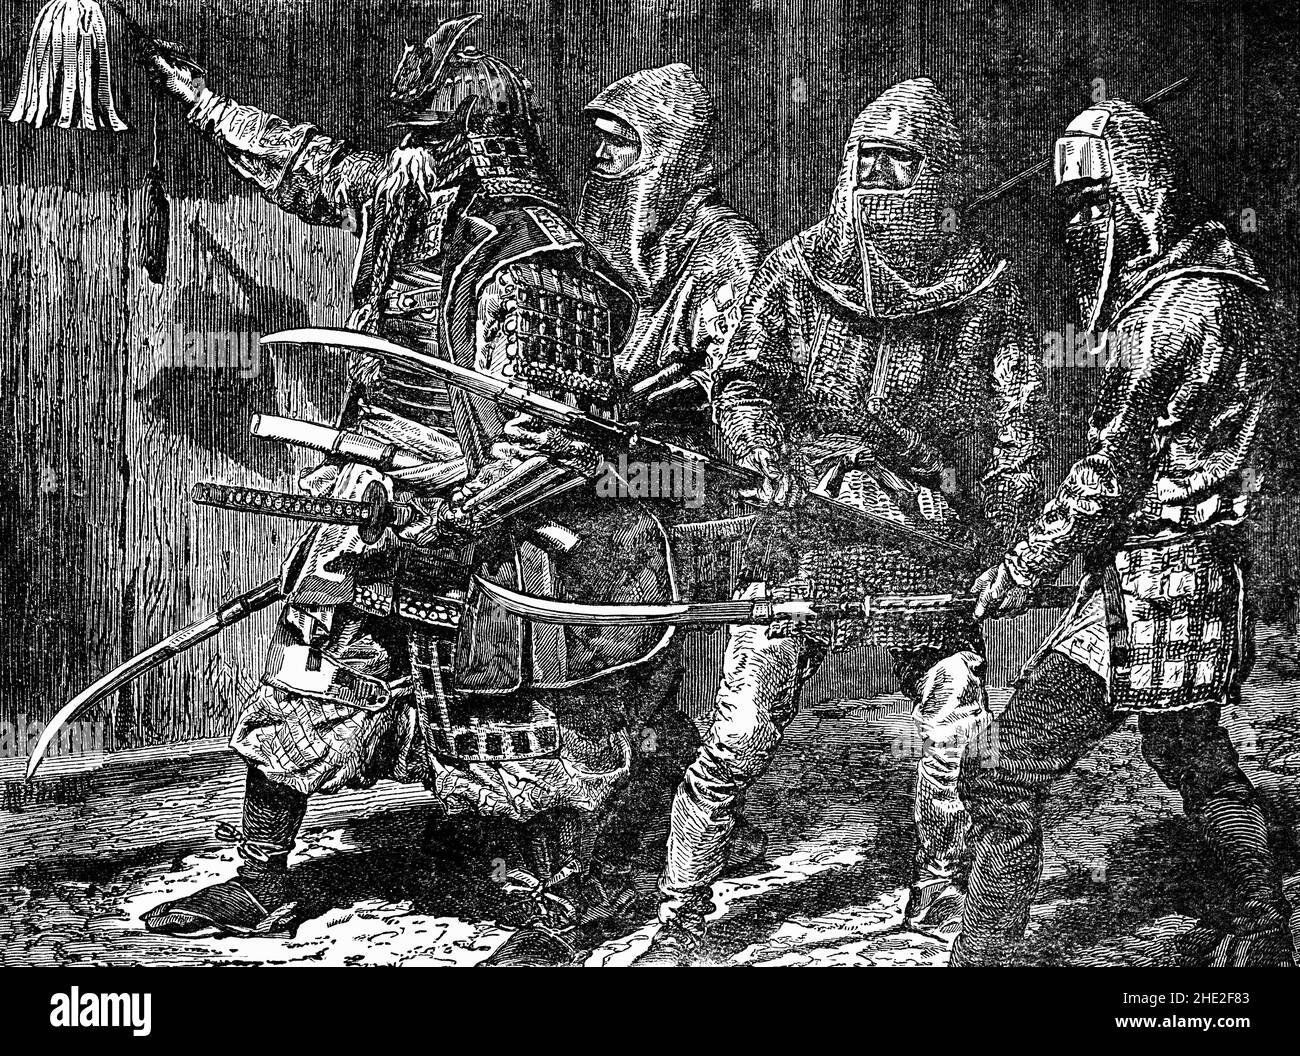 Un'illustrazione di fine 19th secolo dei guerrieri Samurai (o bushi) del vecchio Giappone. Essi hanno costituito la classe militare dominante che alla fine divenne la casta sociale di più alto rango del periodo Edo (1603-1867). Samurai usò archi e frecce, lance, pistole, ma la loro arma principale e simbolo era la spada. Essi conducono la vita secondo il codice etico di bushido ("la via del guerriero"). Fortemente confuciano in natura, bushido ha sottolineato la fedeltà al proprio maestro, autodisciplina e comportamento rispettoso ed etico. Molti samurai furono anche attratti dagli insegnamenti e dalle pratiche del Buddismo Zen. Foto Stock